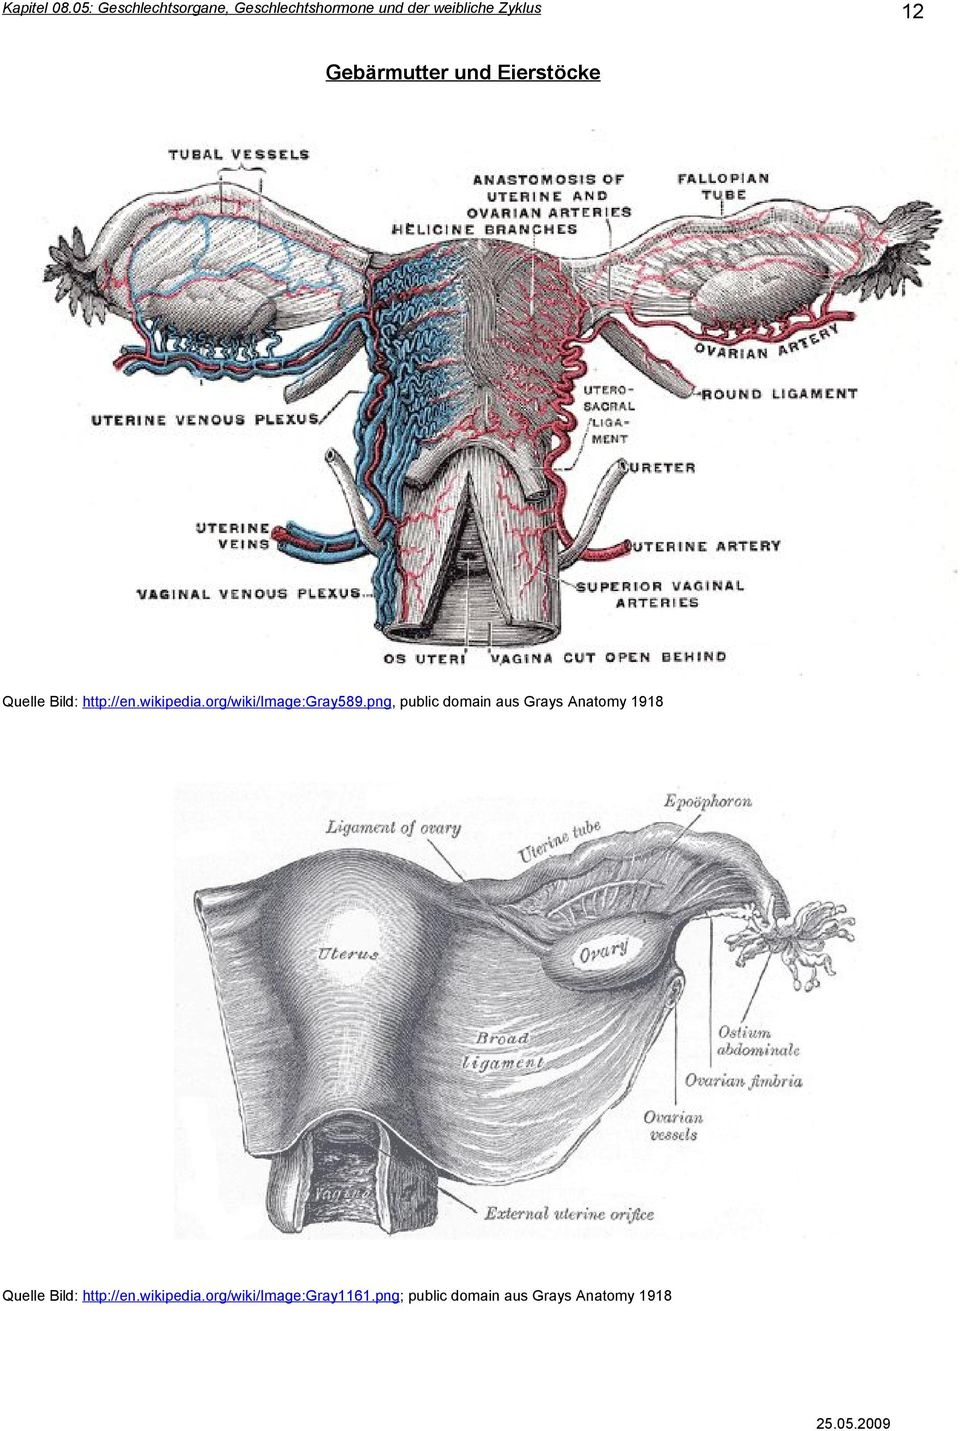 png, public domain aus Grays Anatomy 1918 Quelle Bild: